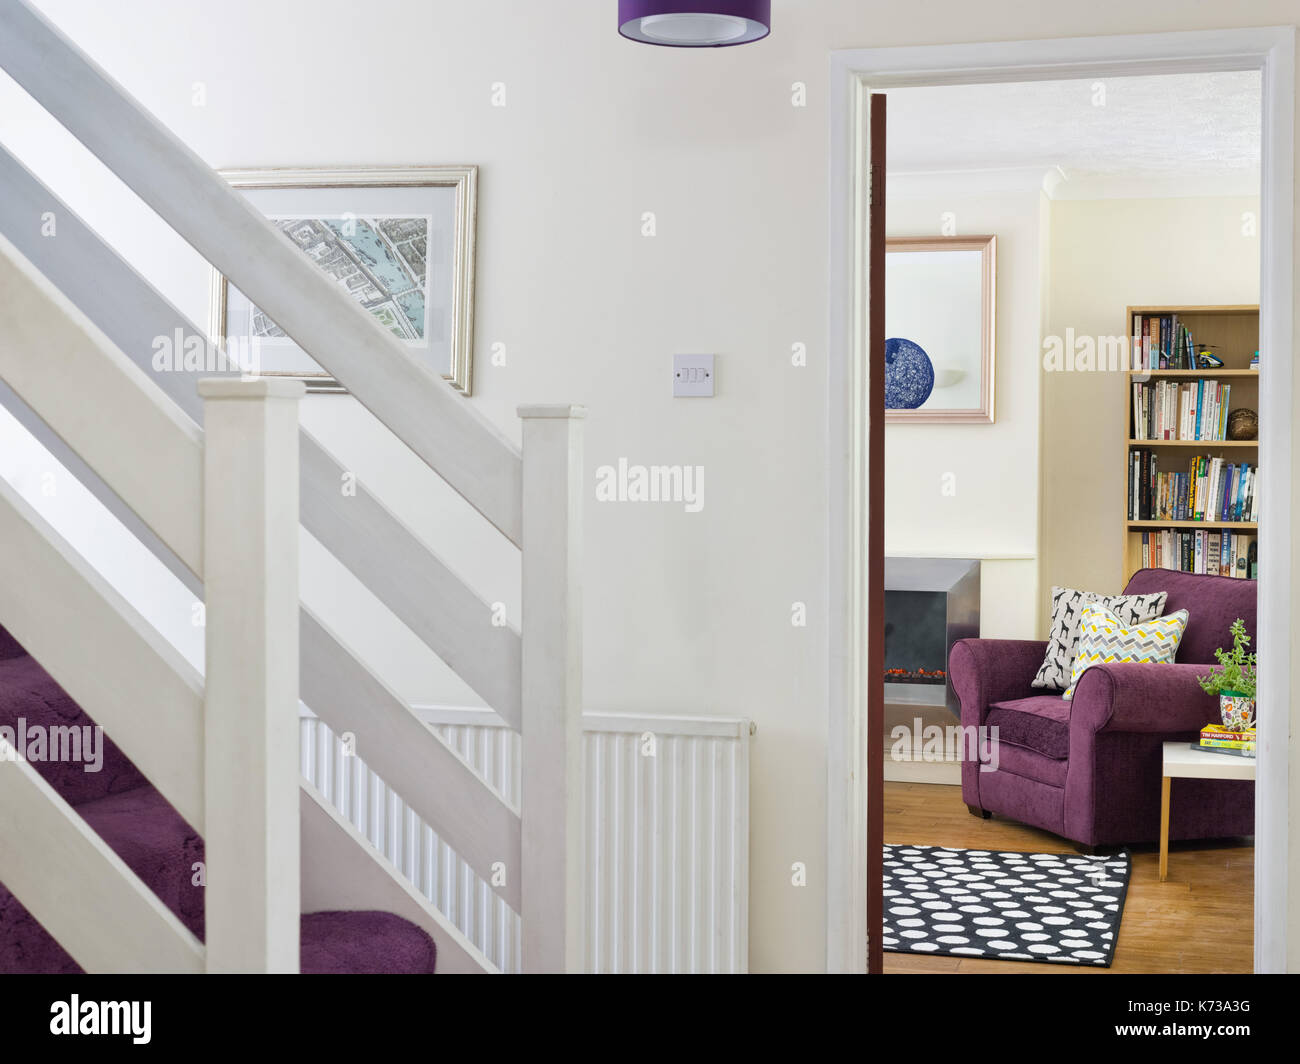 Le scale in una tipica casa del Regno Unito's hall di ingresso con una vista in una stanza di seduta che mostra una comoda poltrona di colore viola e altri mobili Foto Stock